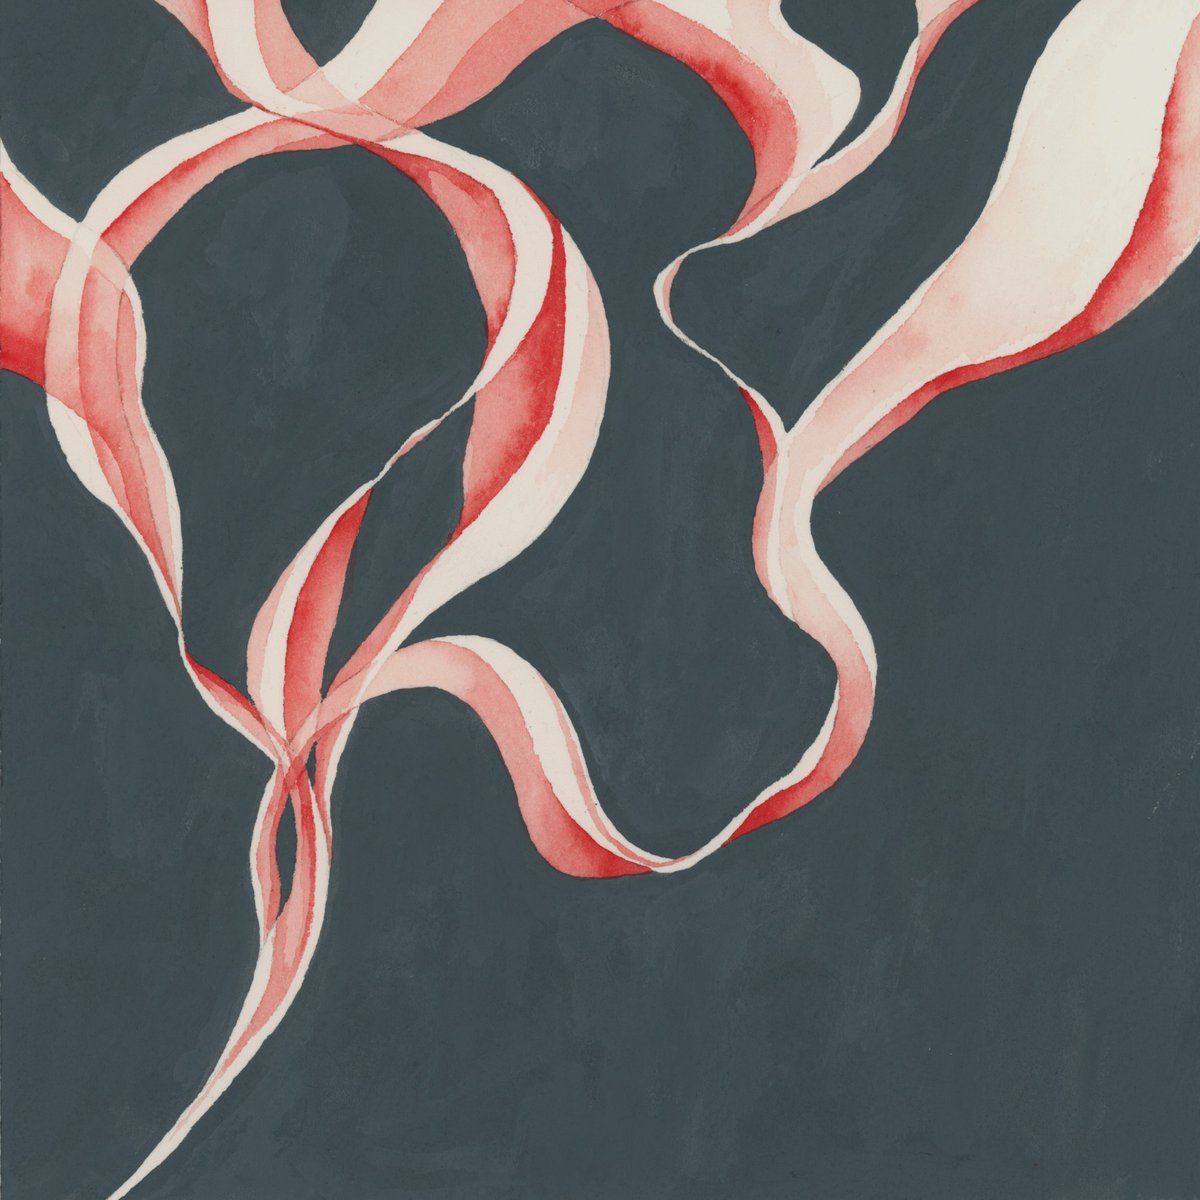 「最近趣味で描いてる煙の絵です 」|塩谷 歩波／Honami Enyaのイラスト